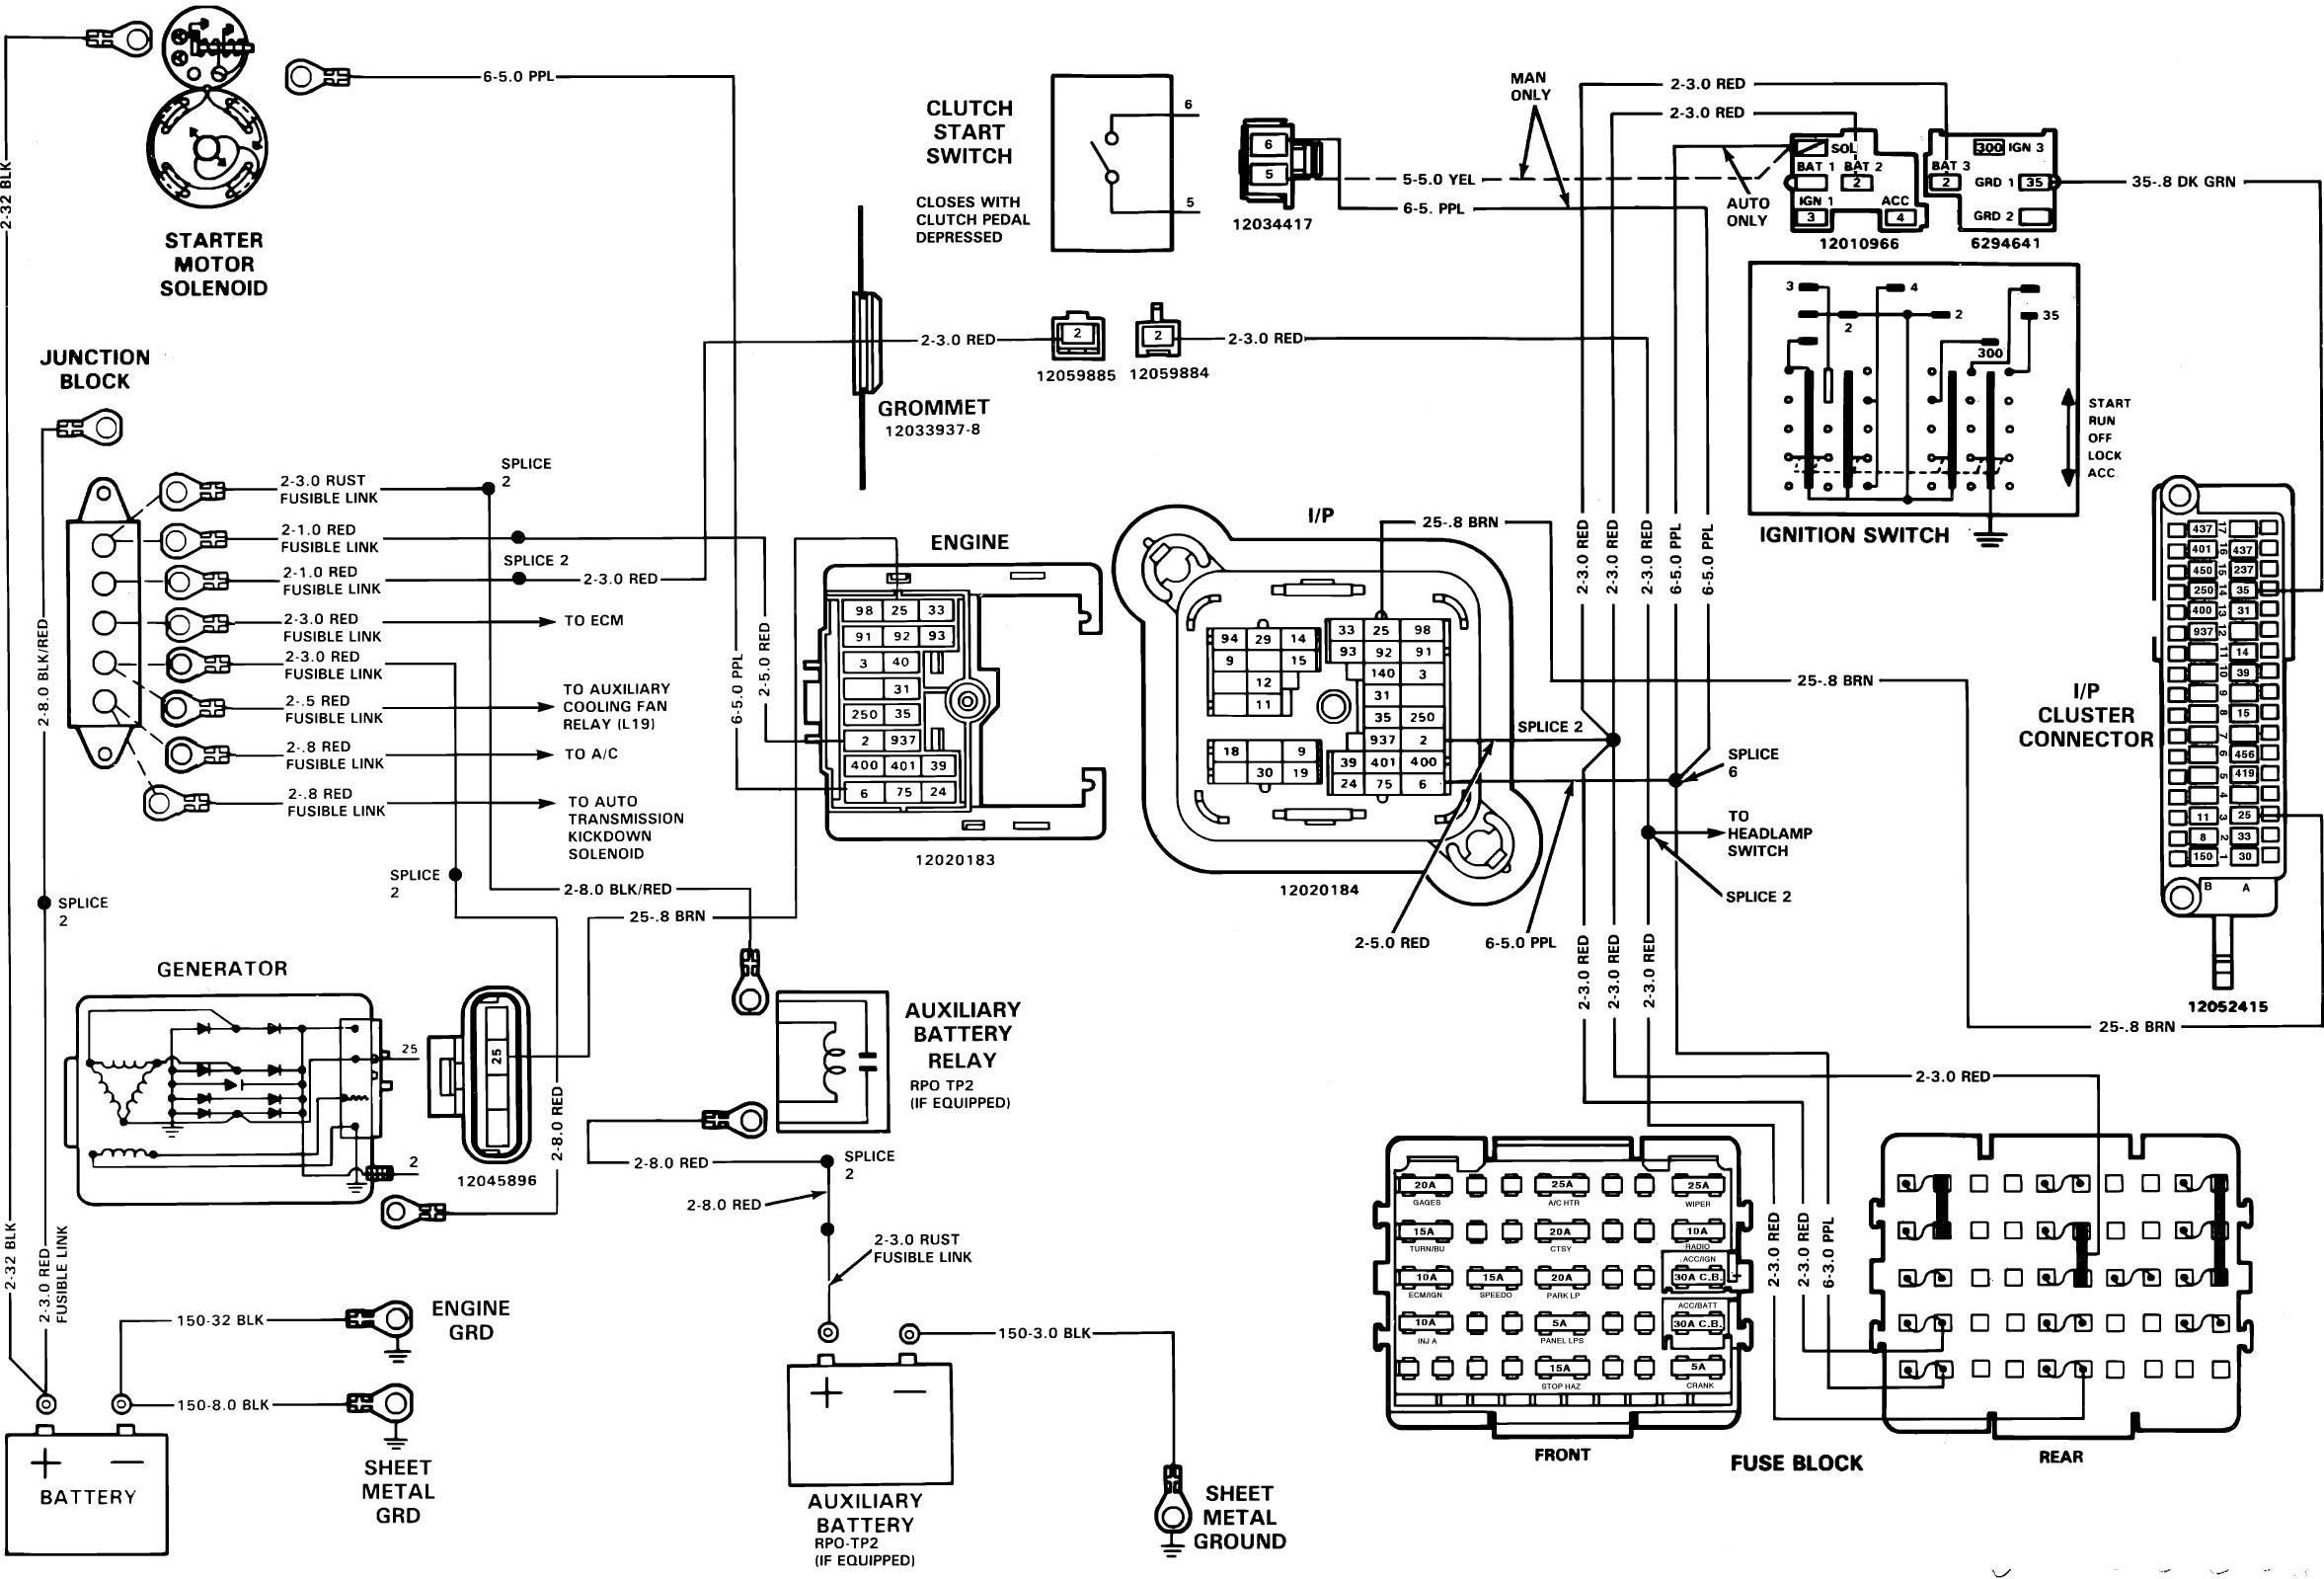 1988 Toyota Pickup Wiring Diagram - Wiring Diagram 1988 Toyota Pickup Tail Light Wiring Diagram